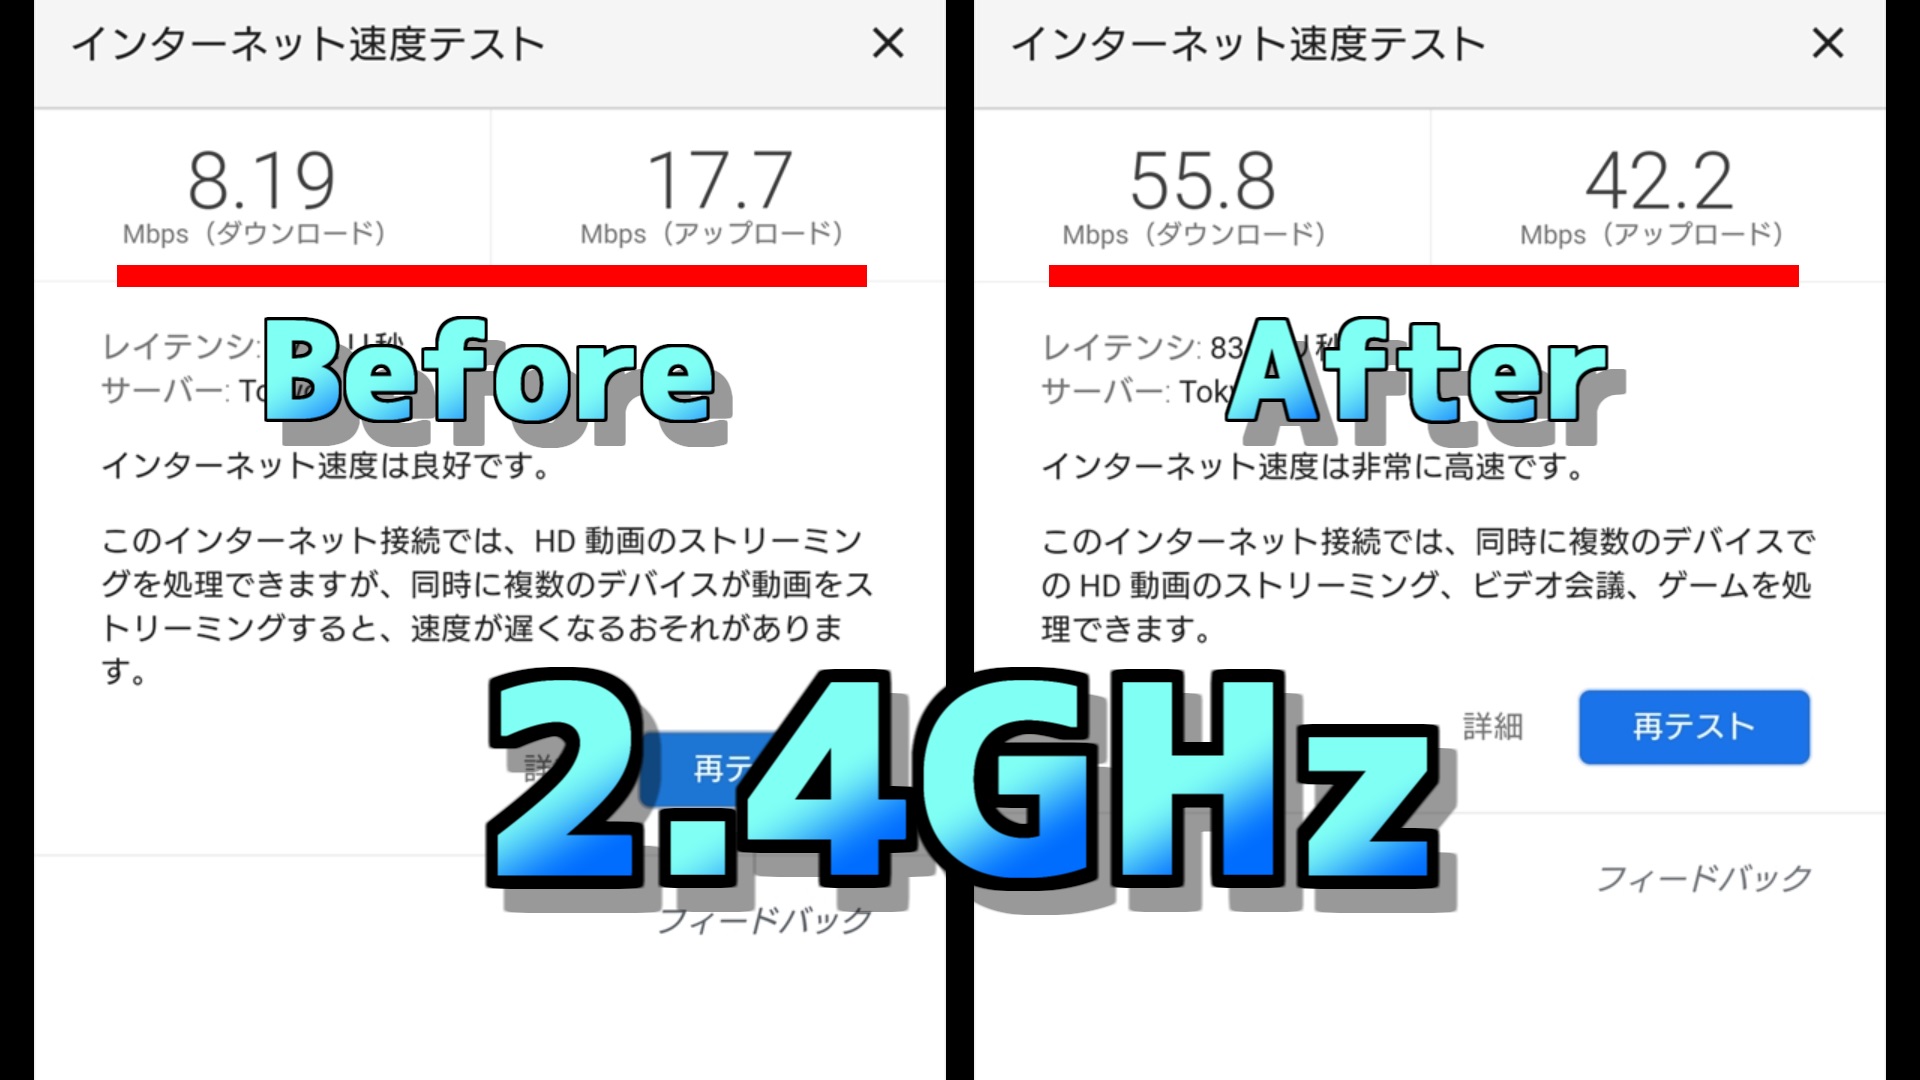 まずは2.4GHzの結果です。なんとダウンロード速度は約7倍になりました！アップロード速度は約3倍で、上りも下りも大幅にスピードが改善されました。